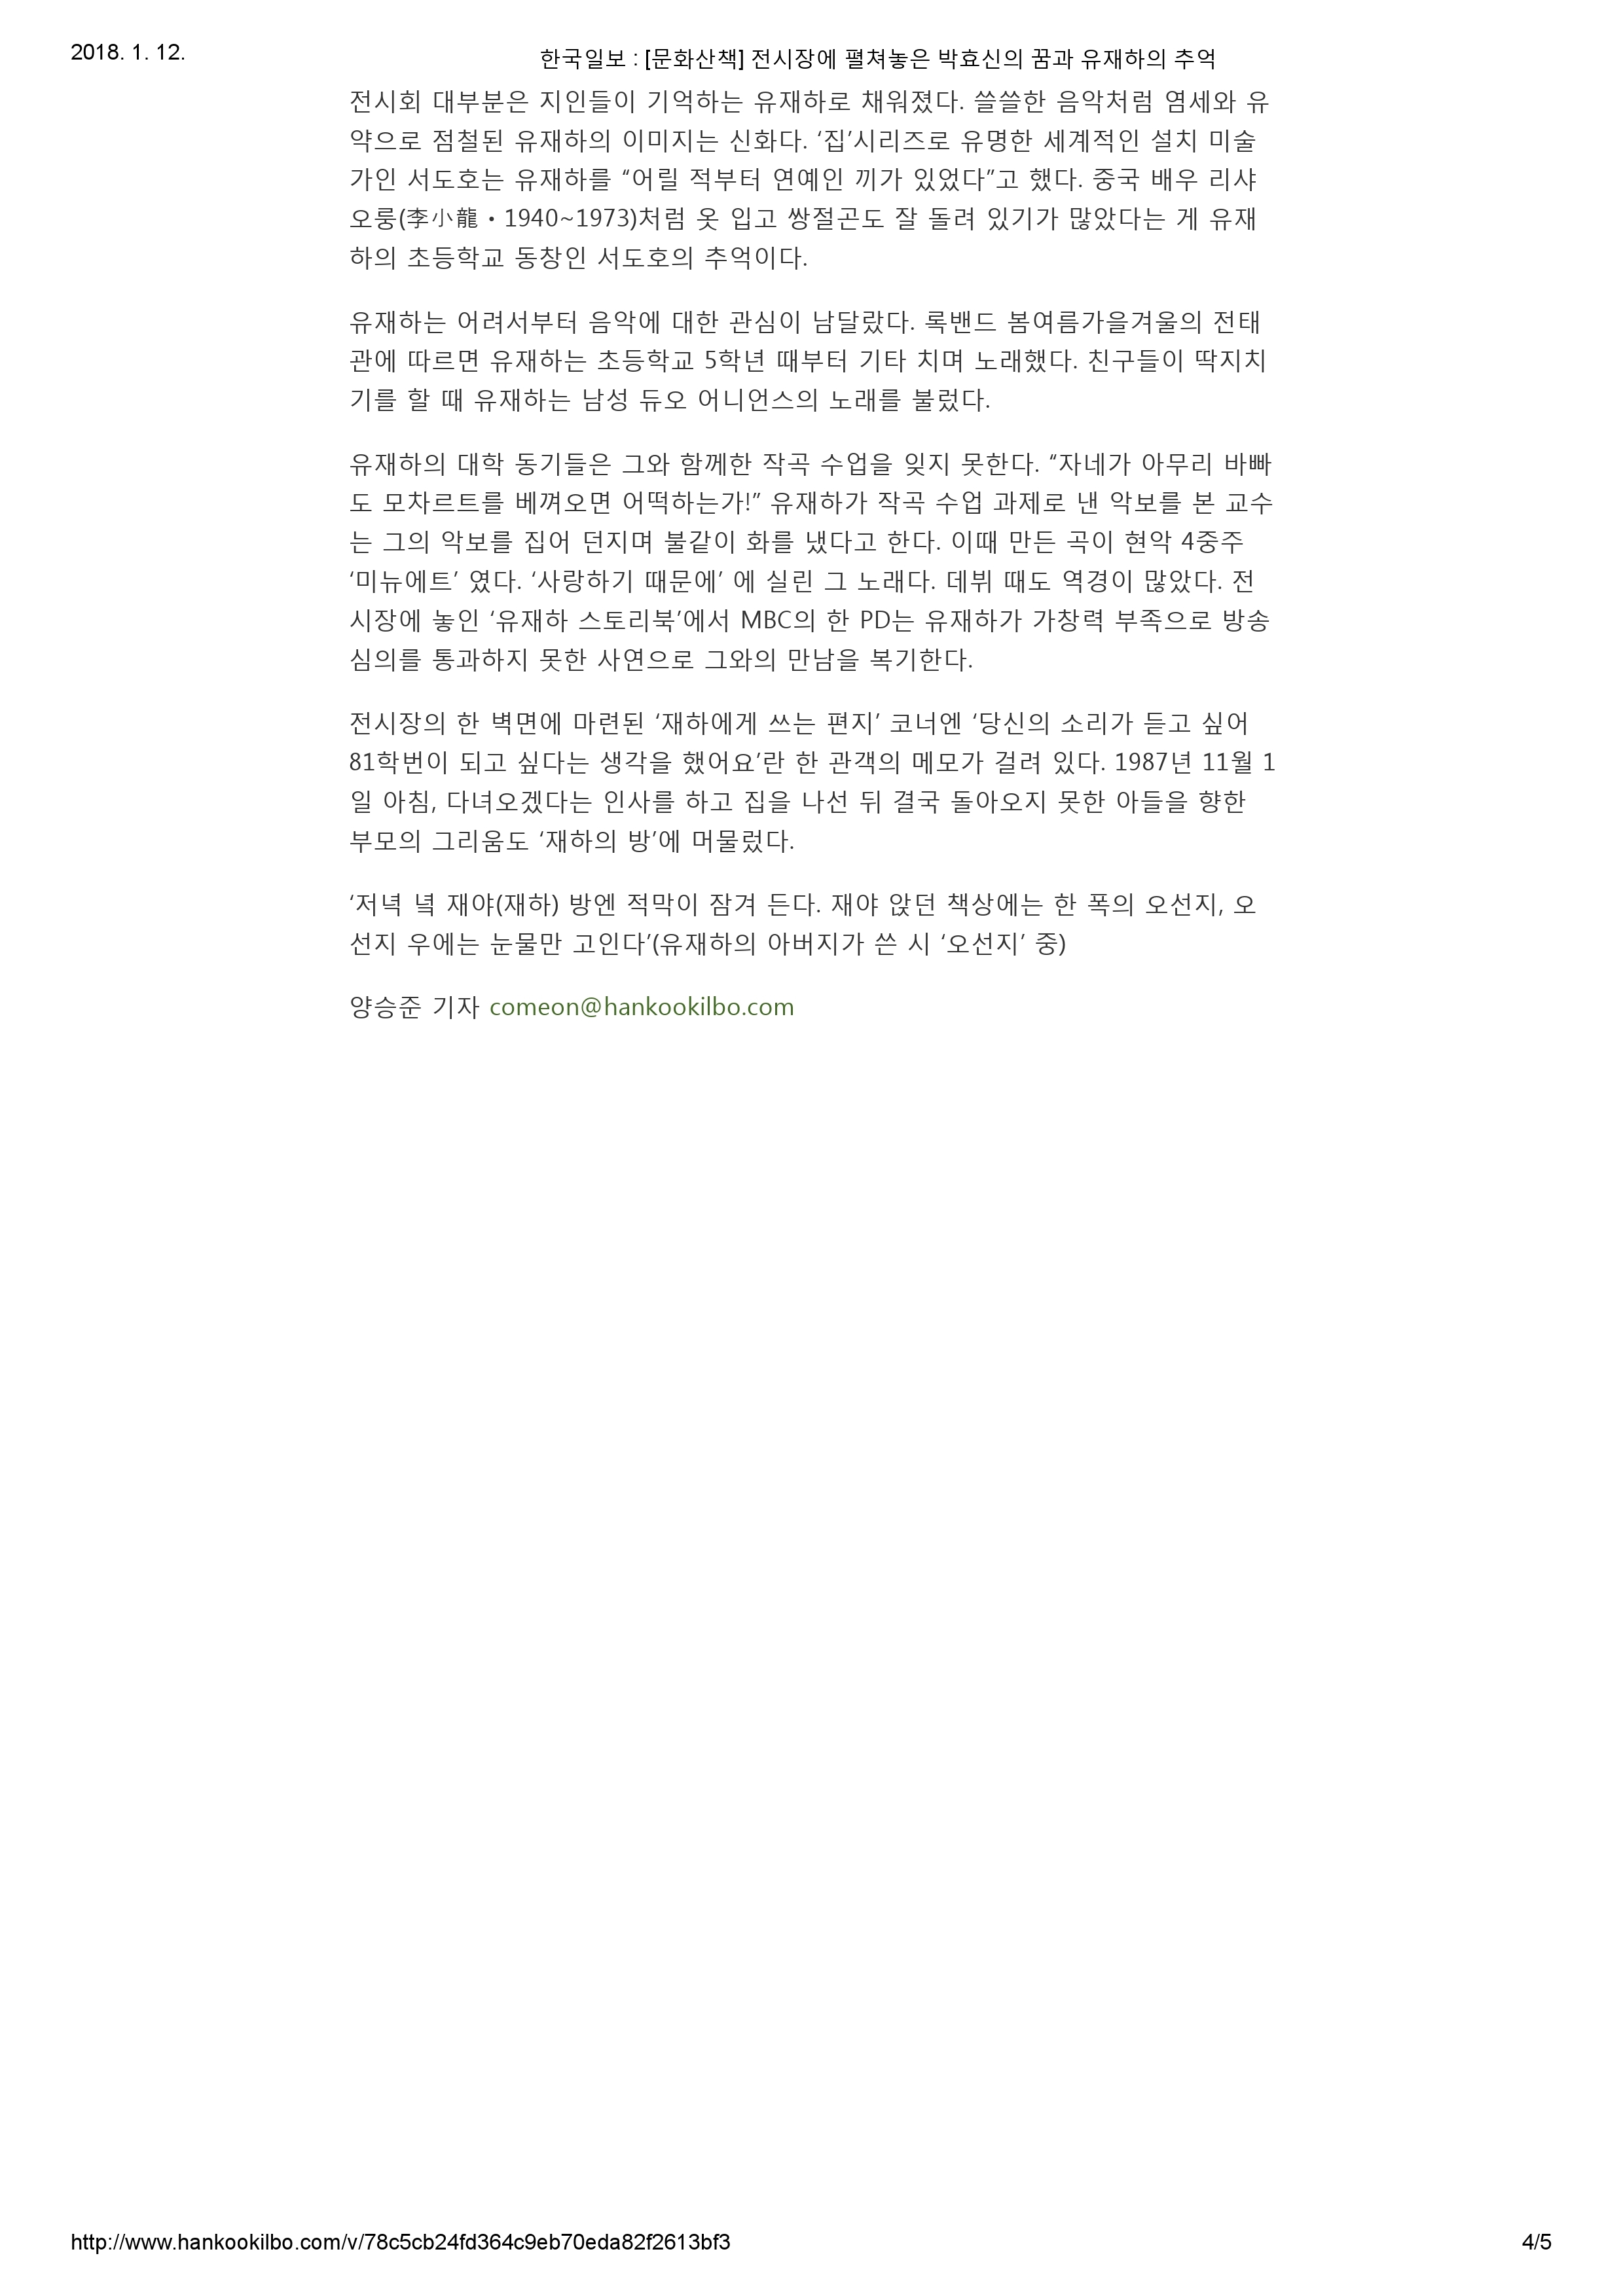 20171215_한국일보_[문화산책] 전시장에 펼쳐놓은 박효신의 꿈과 유재하의 추억-4.jpg